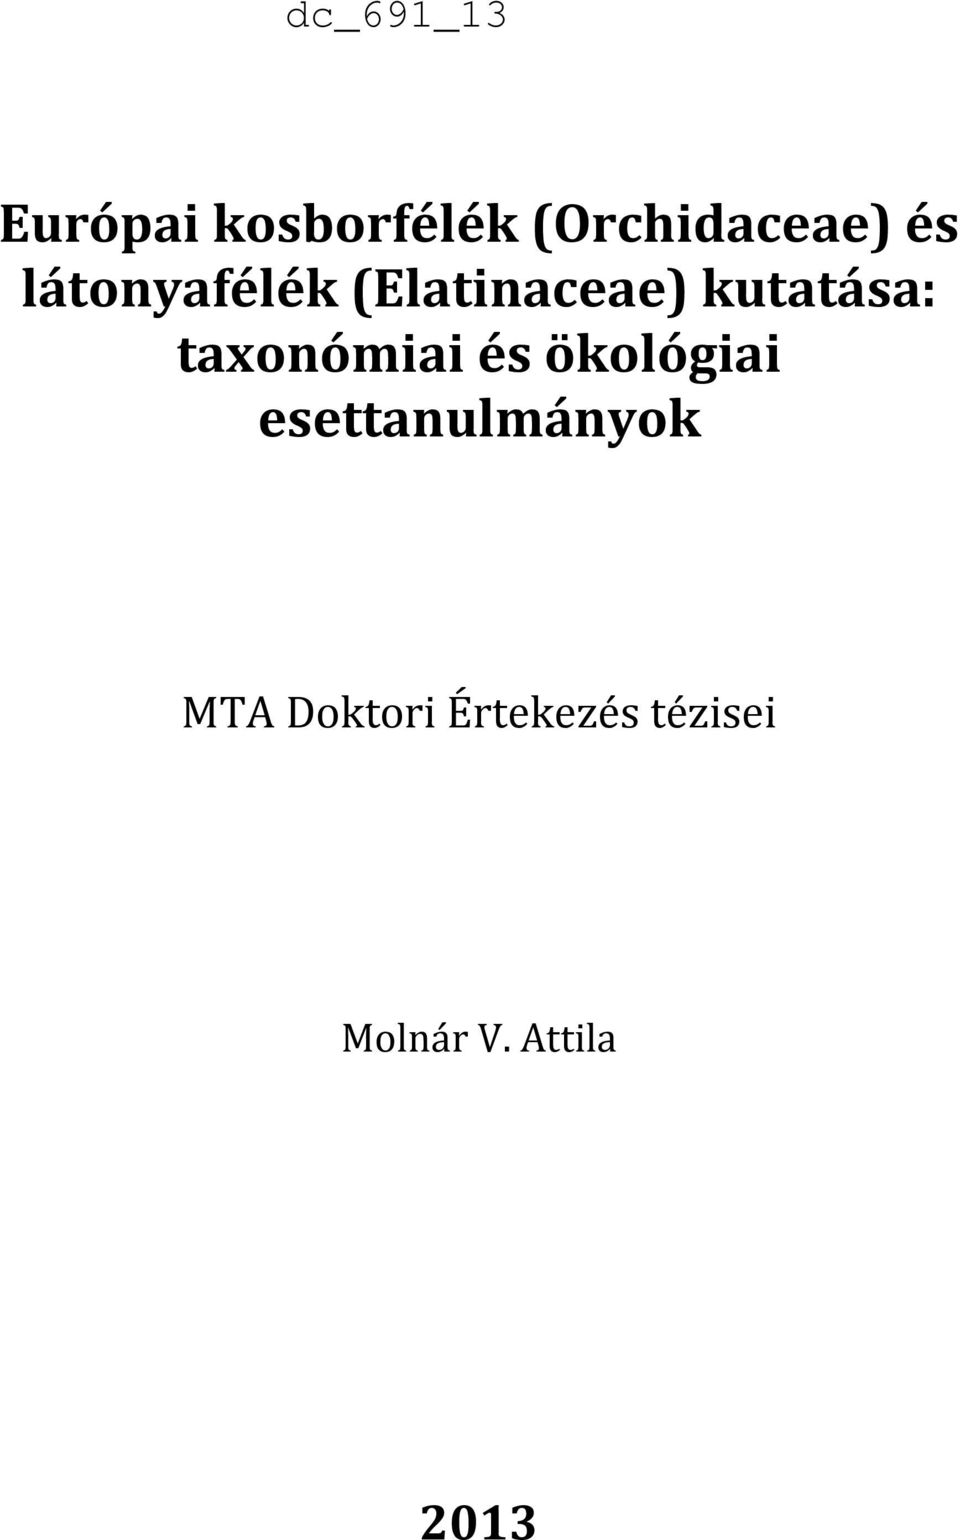 taxonómiai és ökológiai esettanulmányok